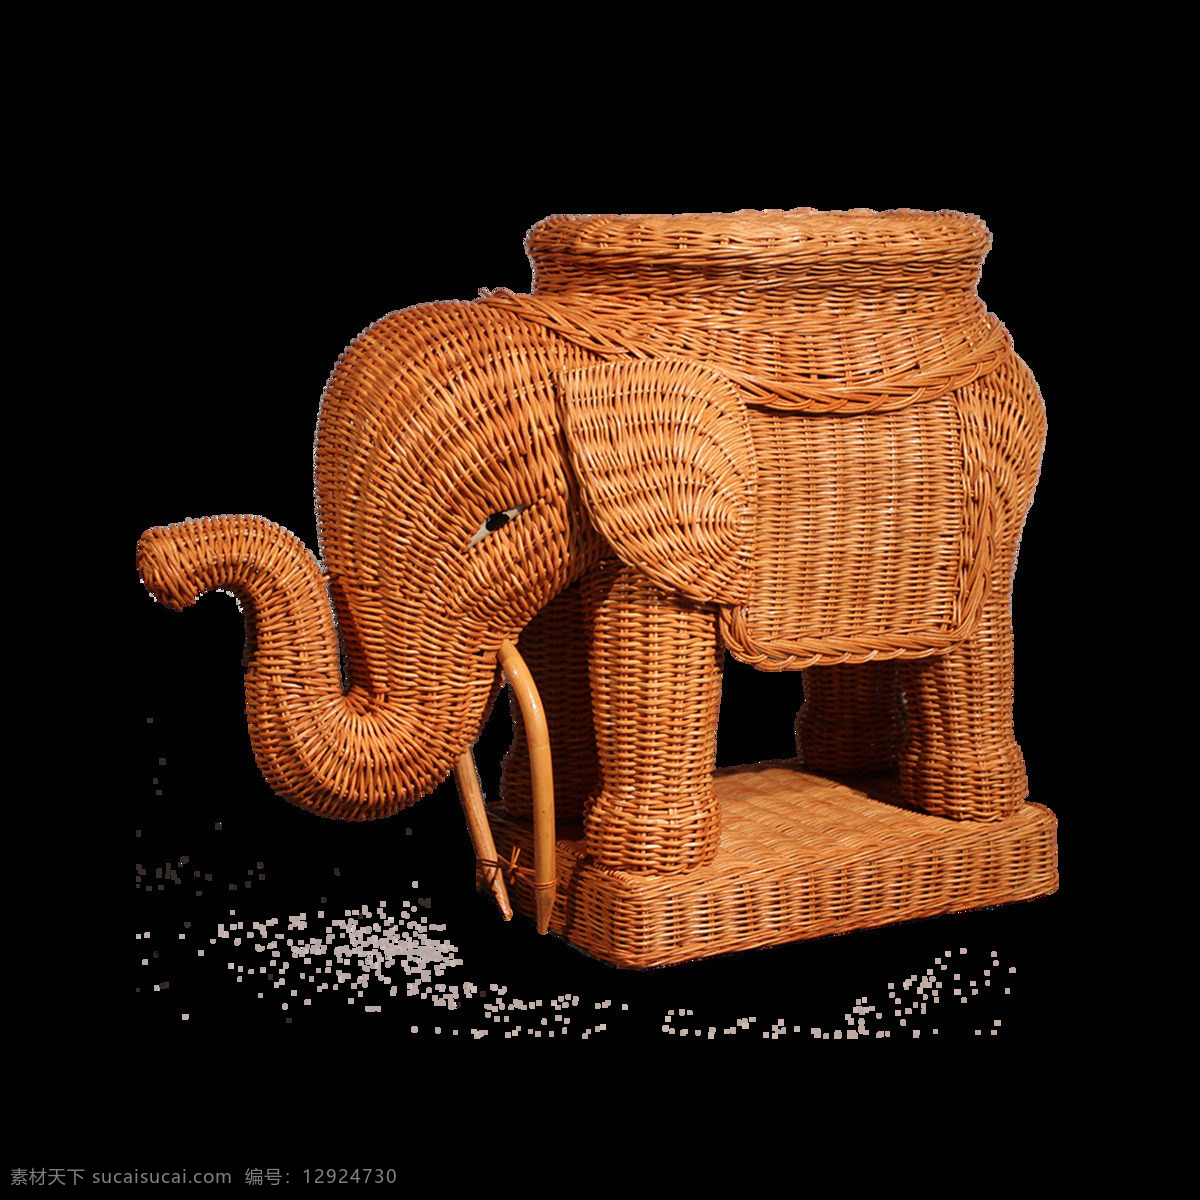 褐色 石块 大象 元素 褐色大象 雕刻 雕像 石雕大象 免抠